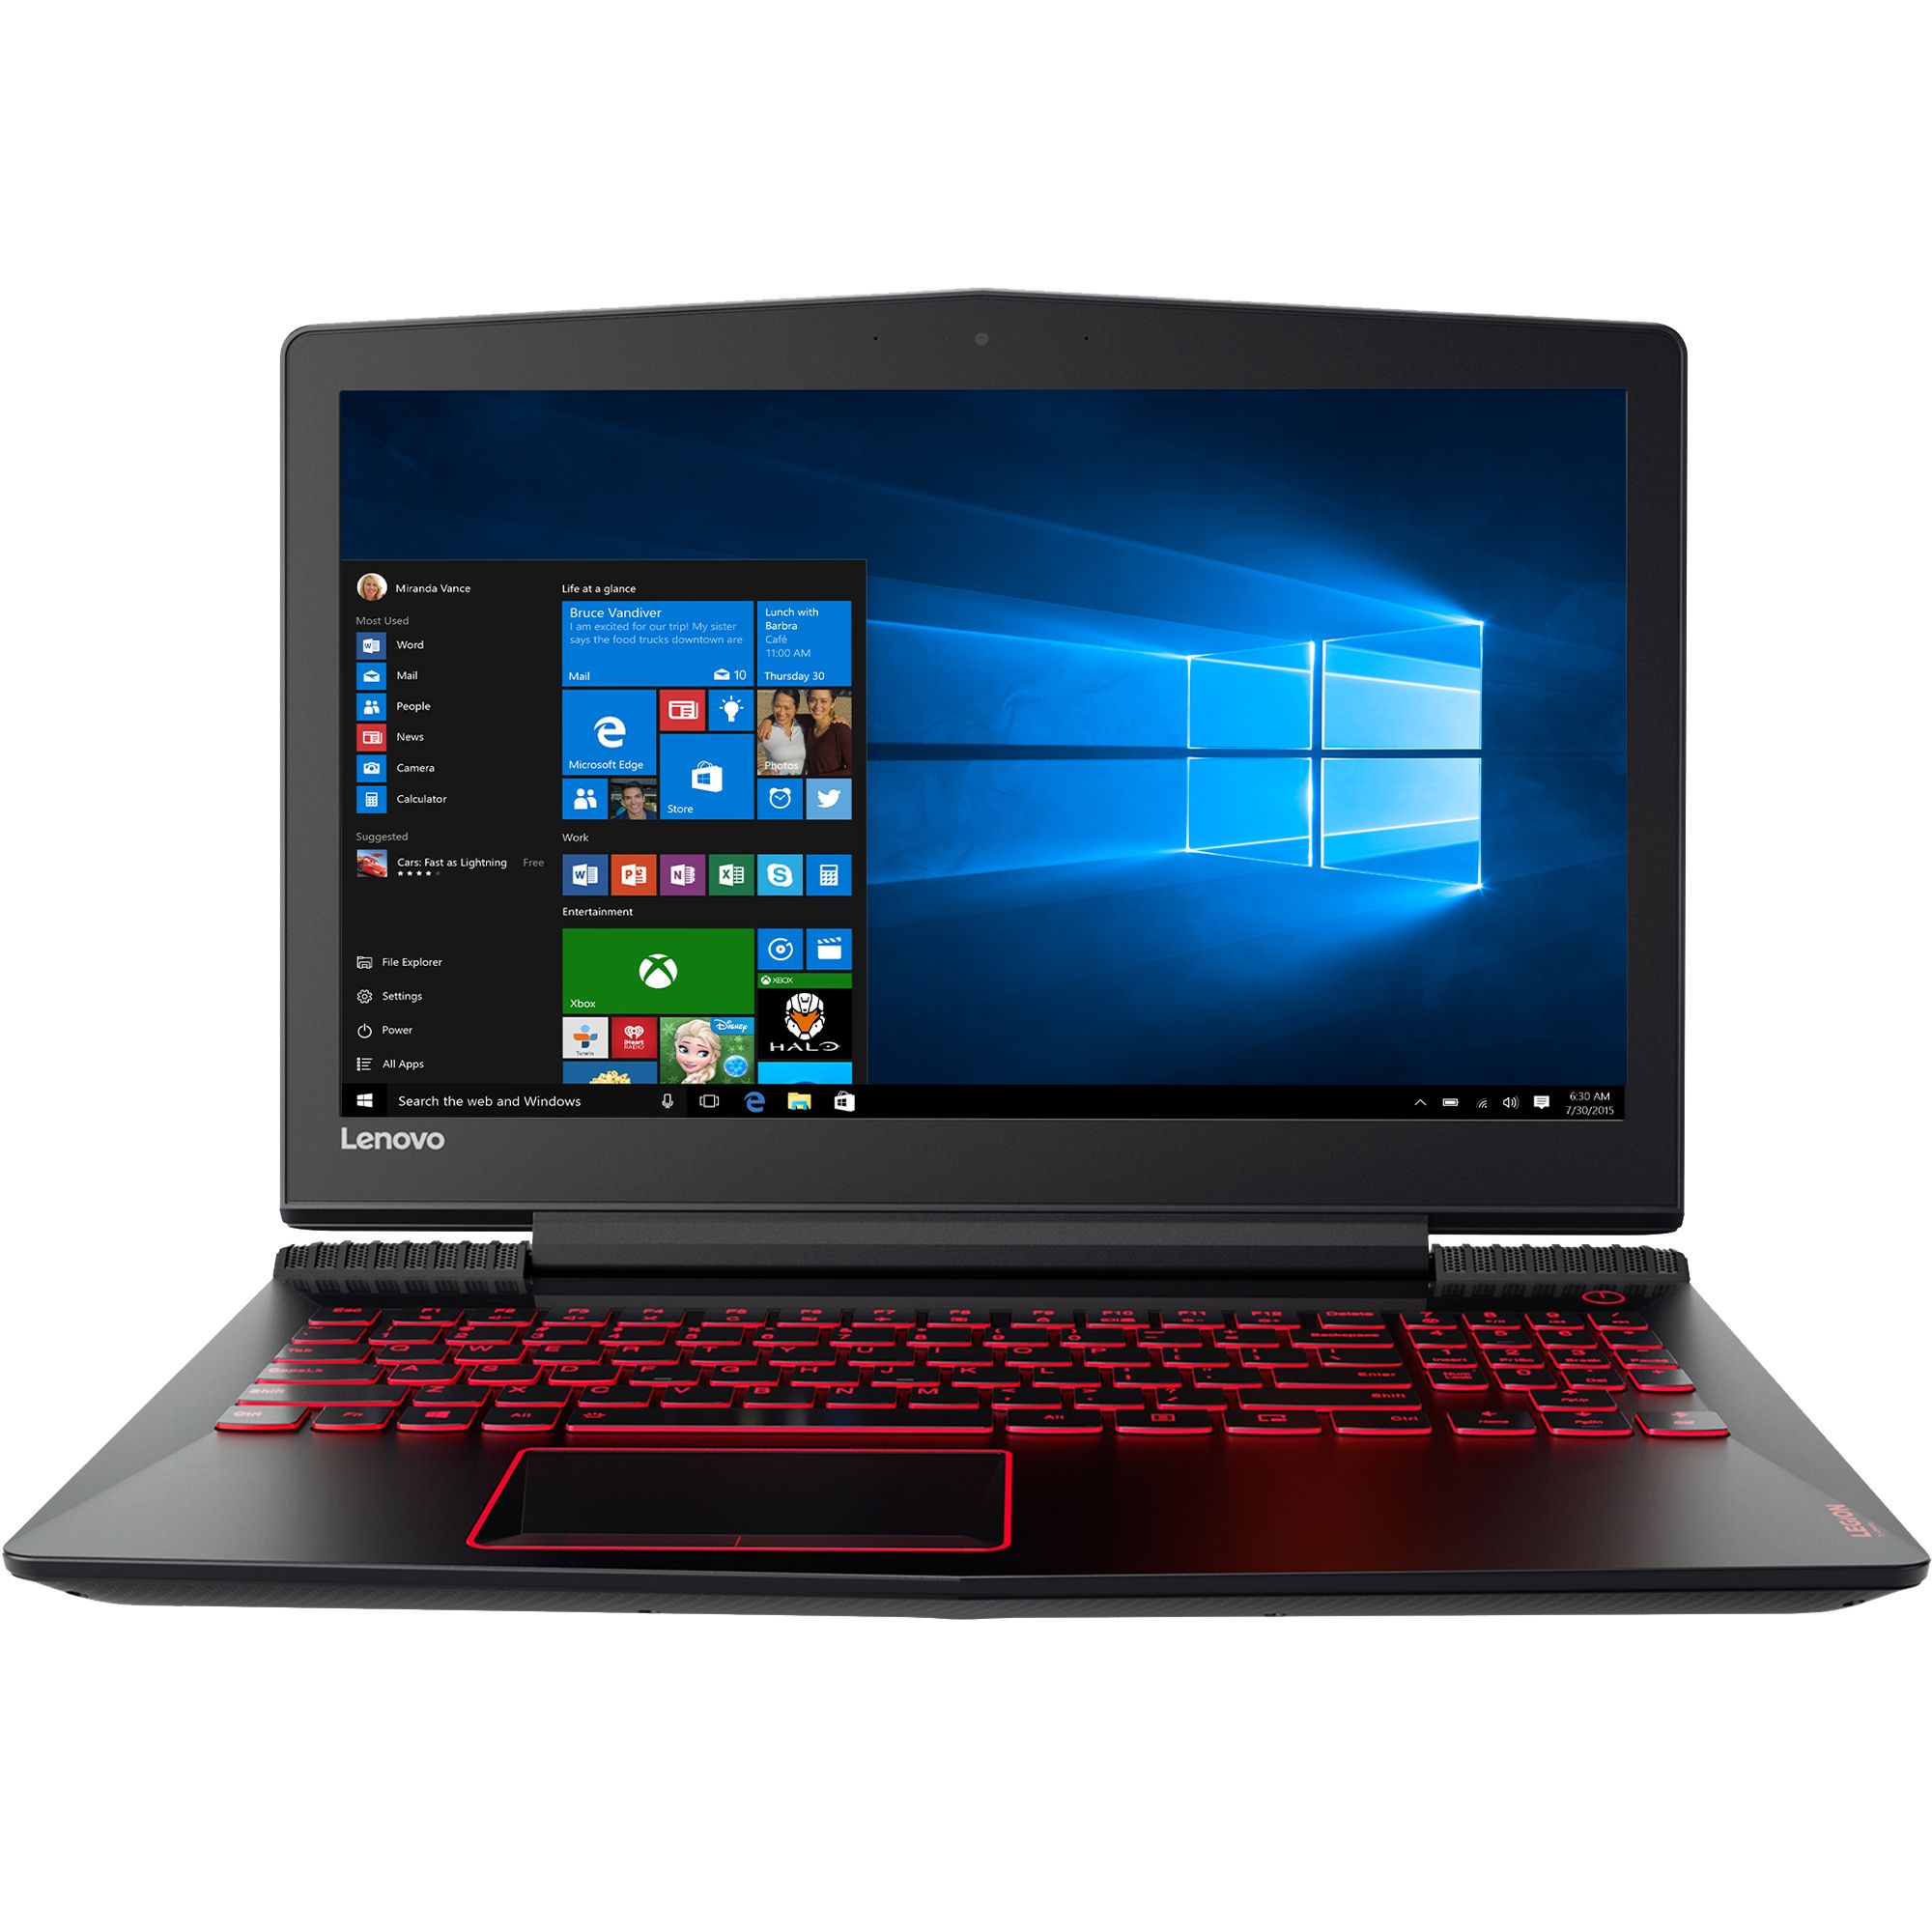 Laptop Gaming Lenovo Legion Y520-15IKBN, Intel Core i7-7700HQ, 8GB DDR4, HDD 1TB, nVidia GeForce GTX 1050 4GB, Windows 10 Home